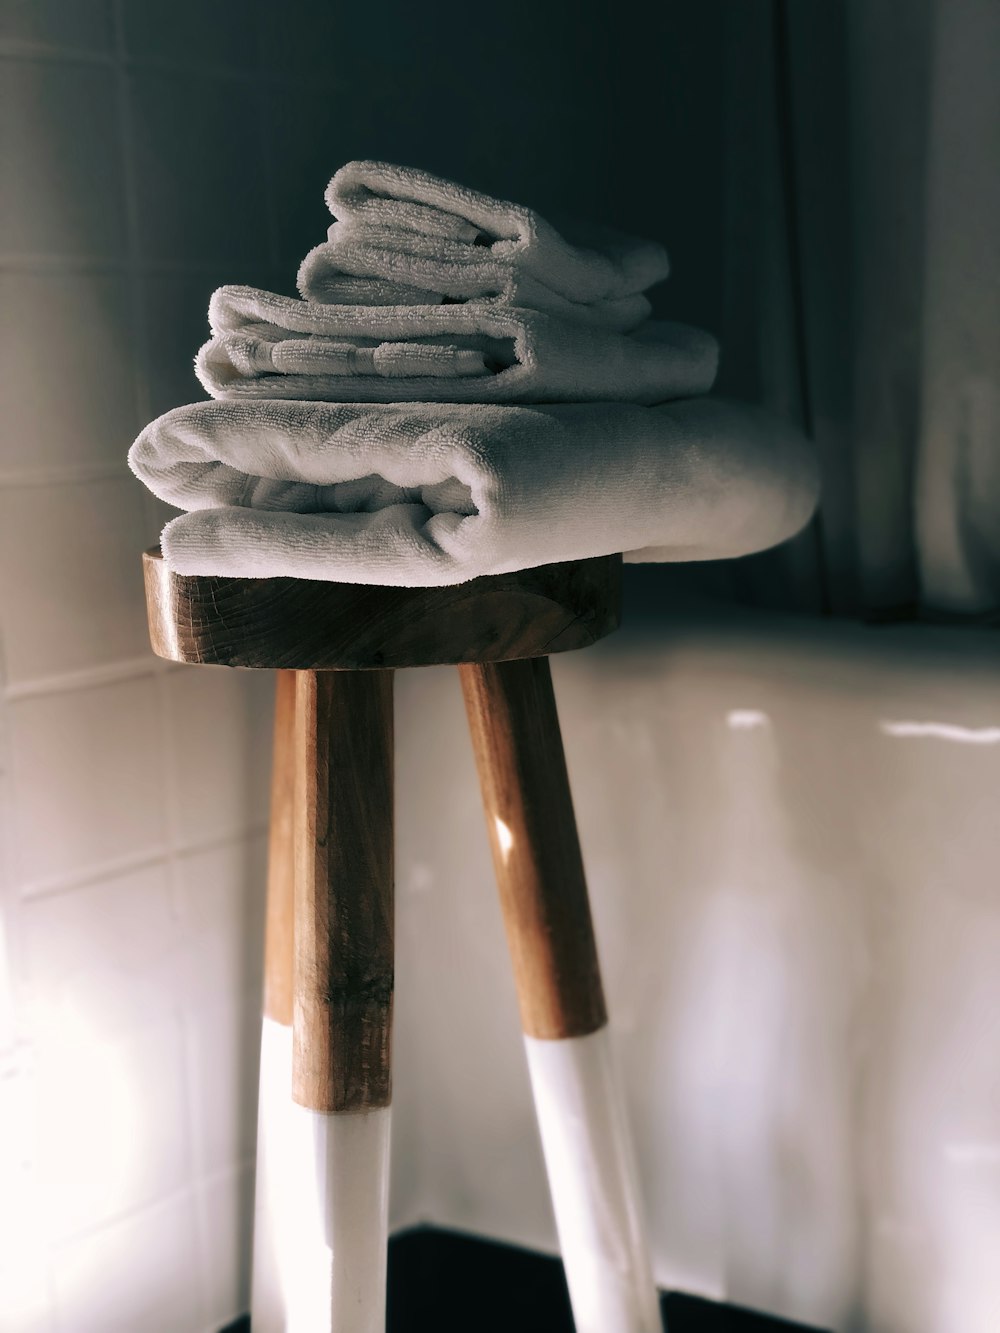 asciugamani bianchi su sgabello di legno marrone